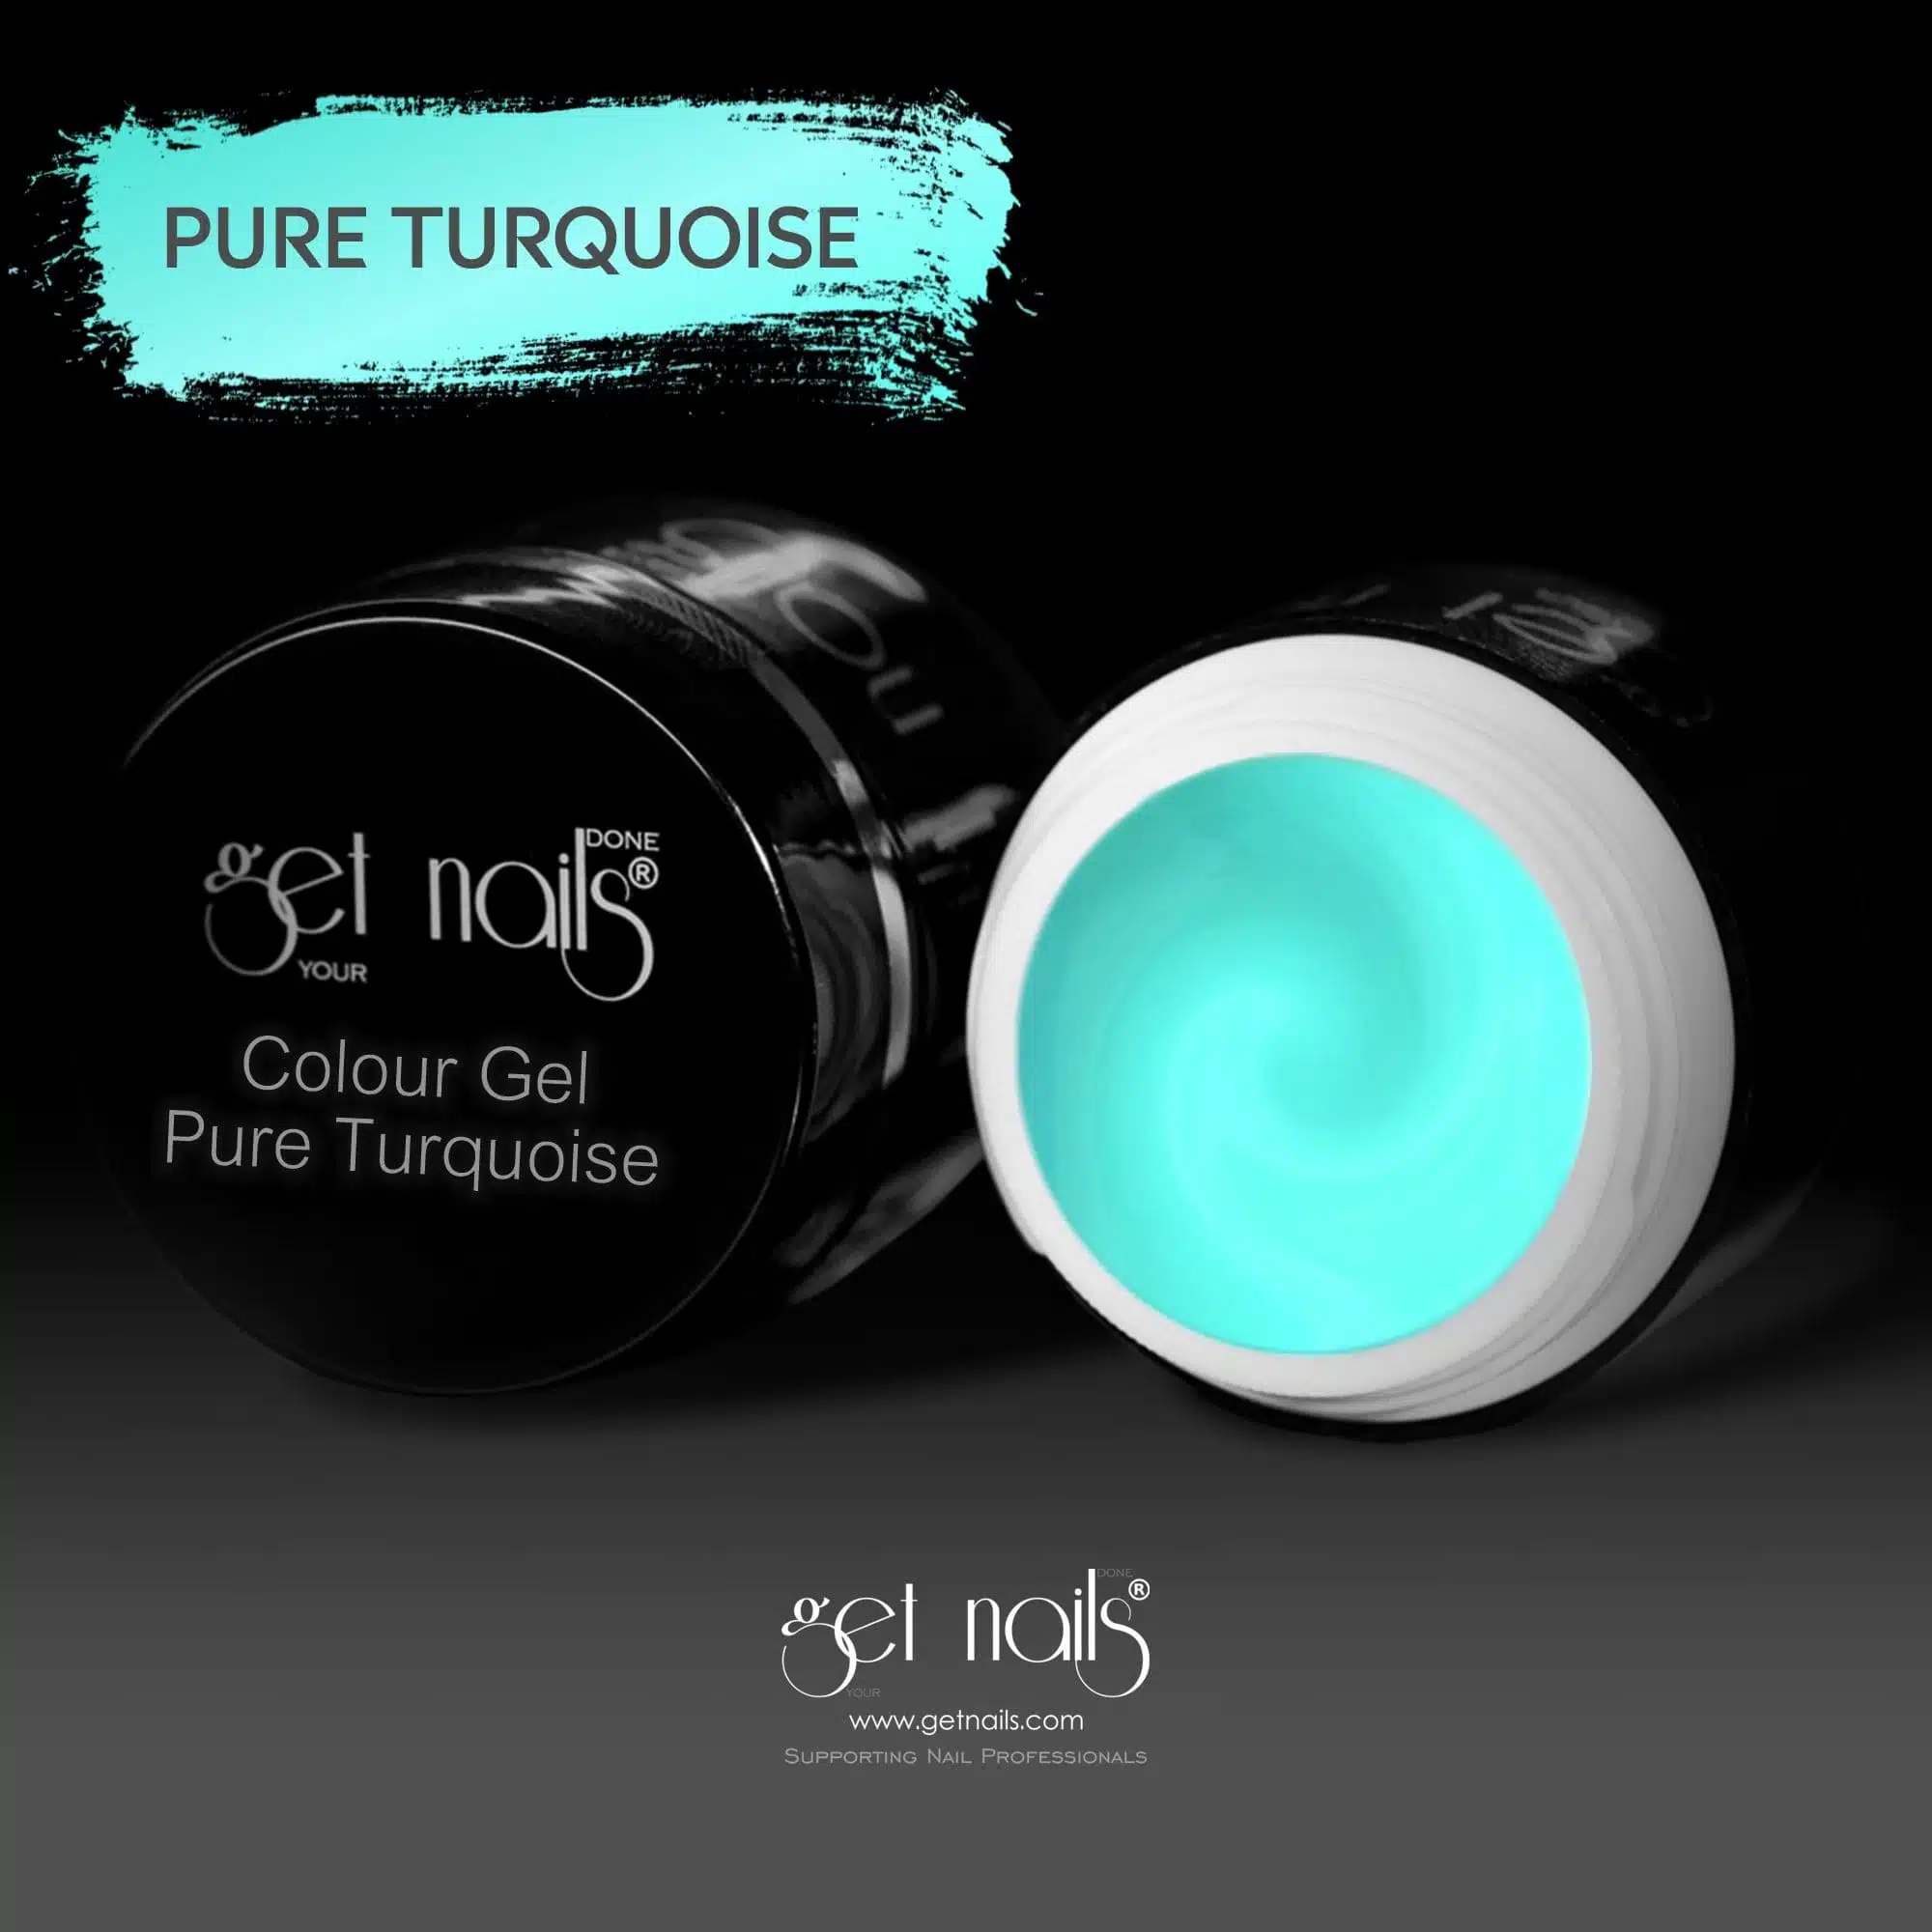 Get Nails Austria - Colour Gel Pure Turquoise 5g